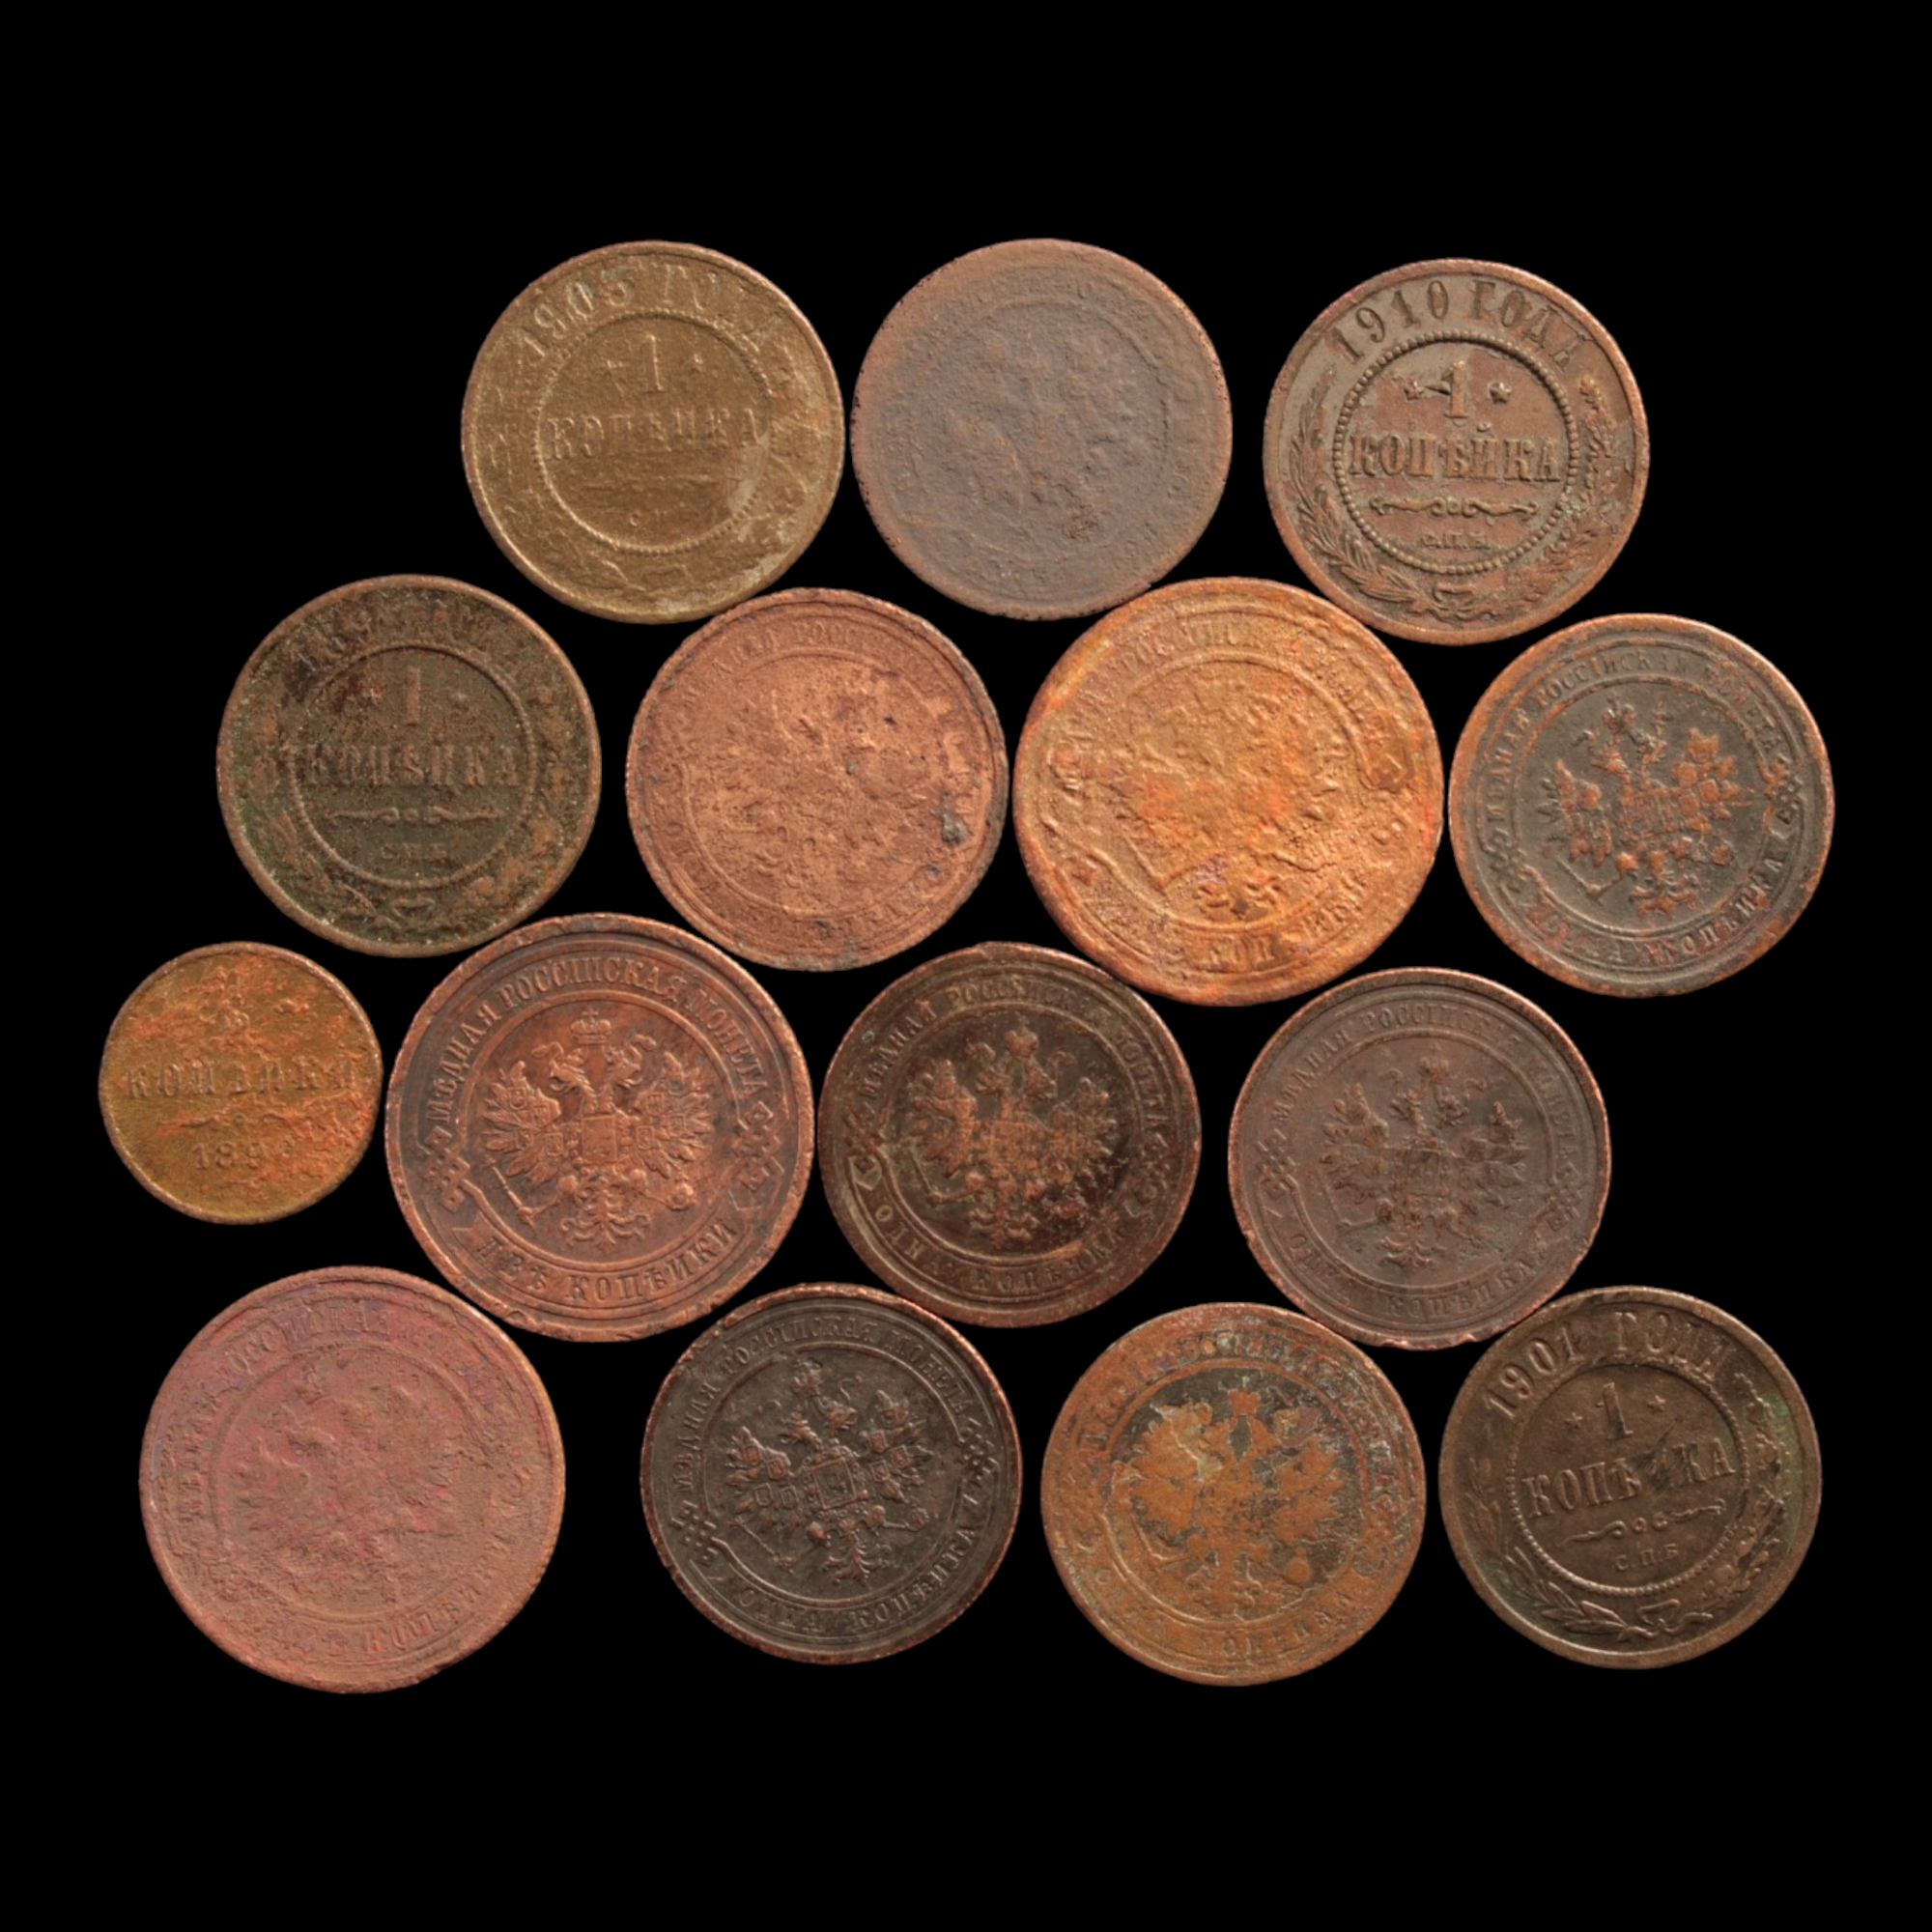 Russia, Tsar Nicholas II, Lot of 15 Copper Coins - 1894 to 1917 - Russian Empire